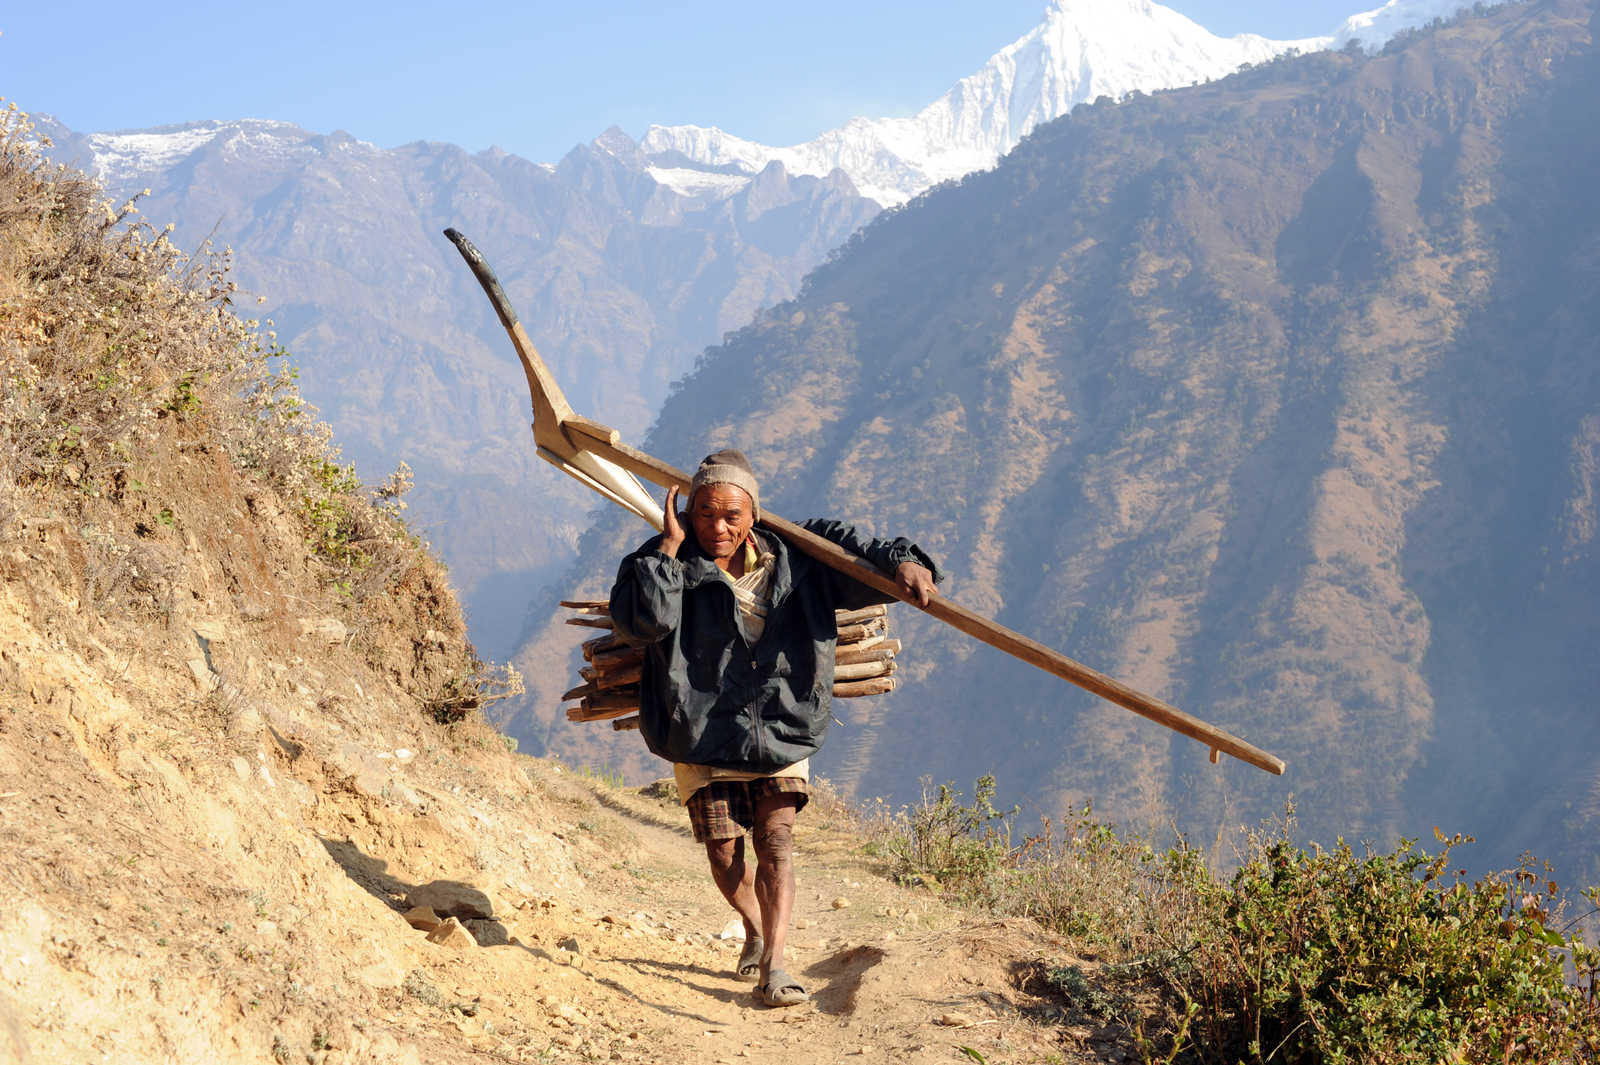 Image Kala Pattar et Camp de base de l'Everest